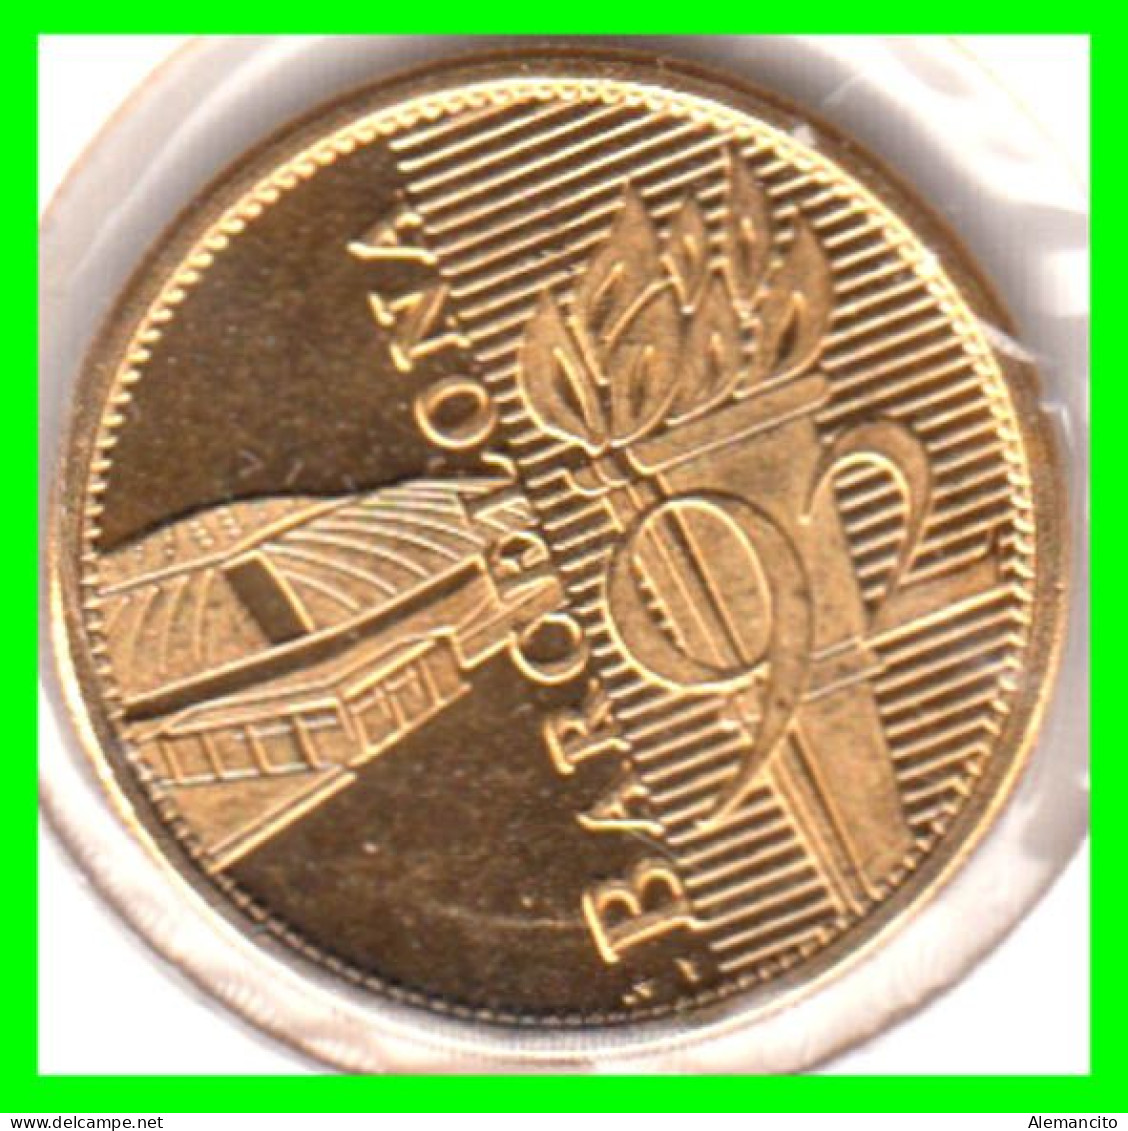 ESPAÑA  ( EUROPA ) - MEDALLA JUEGOS OLIMPICOS BARCELONA 92 ( BAÑADA EN ORO 22 KILATES) - Monedas Elongadas (elongated Coins)